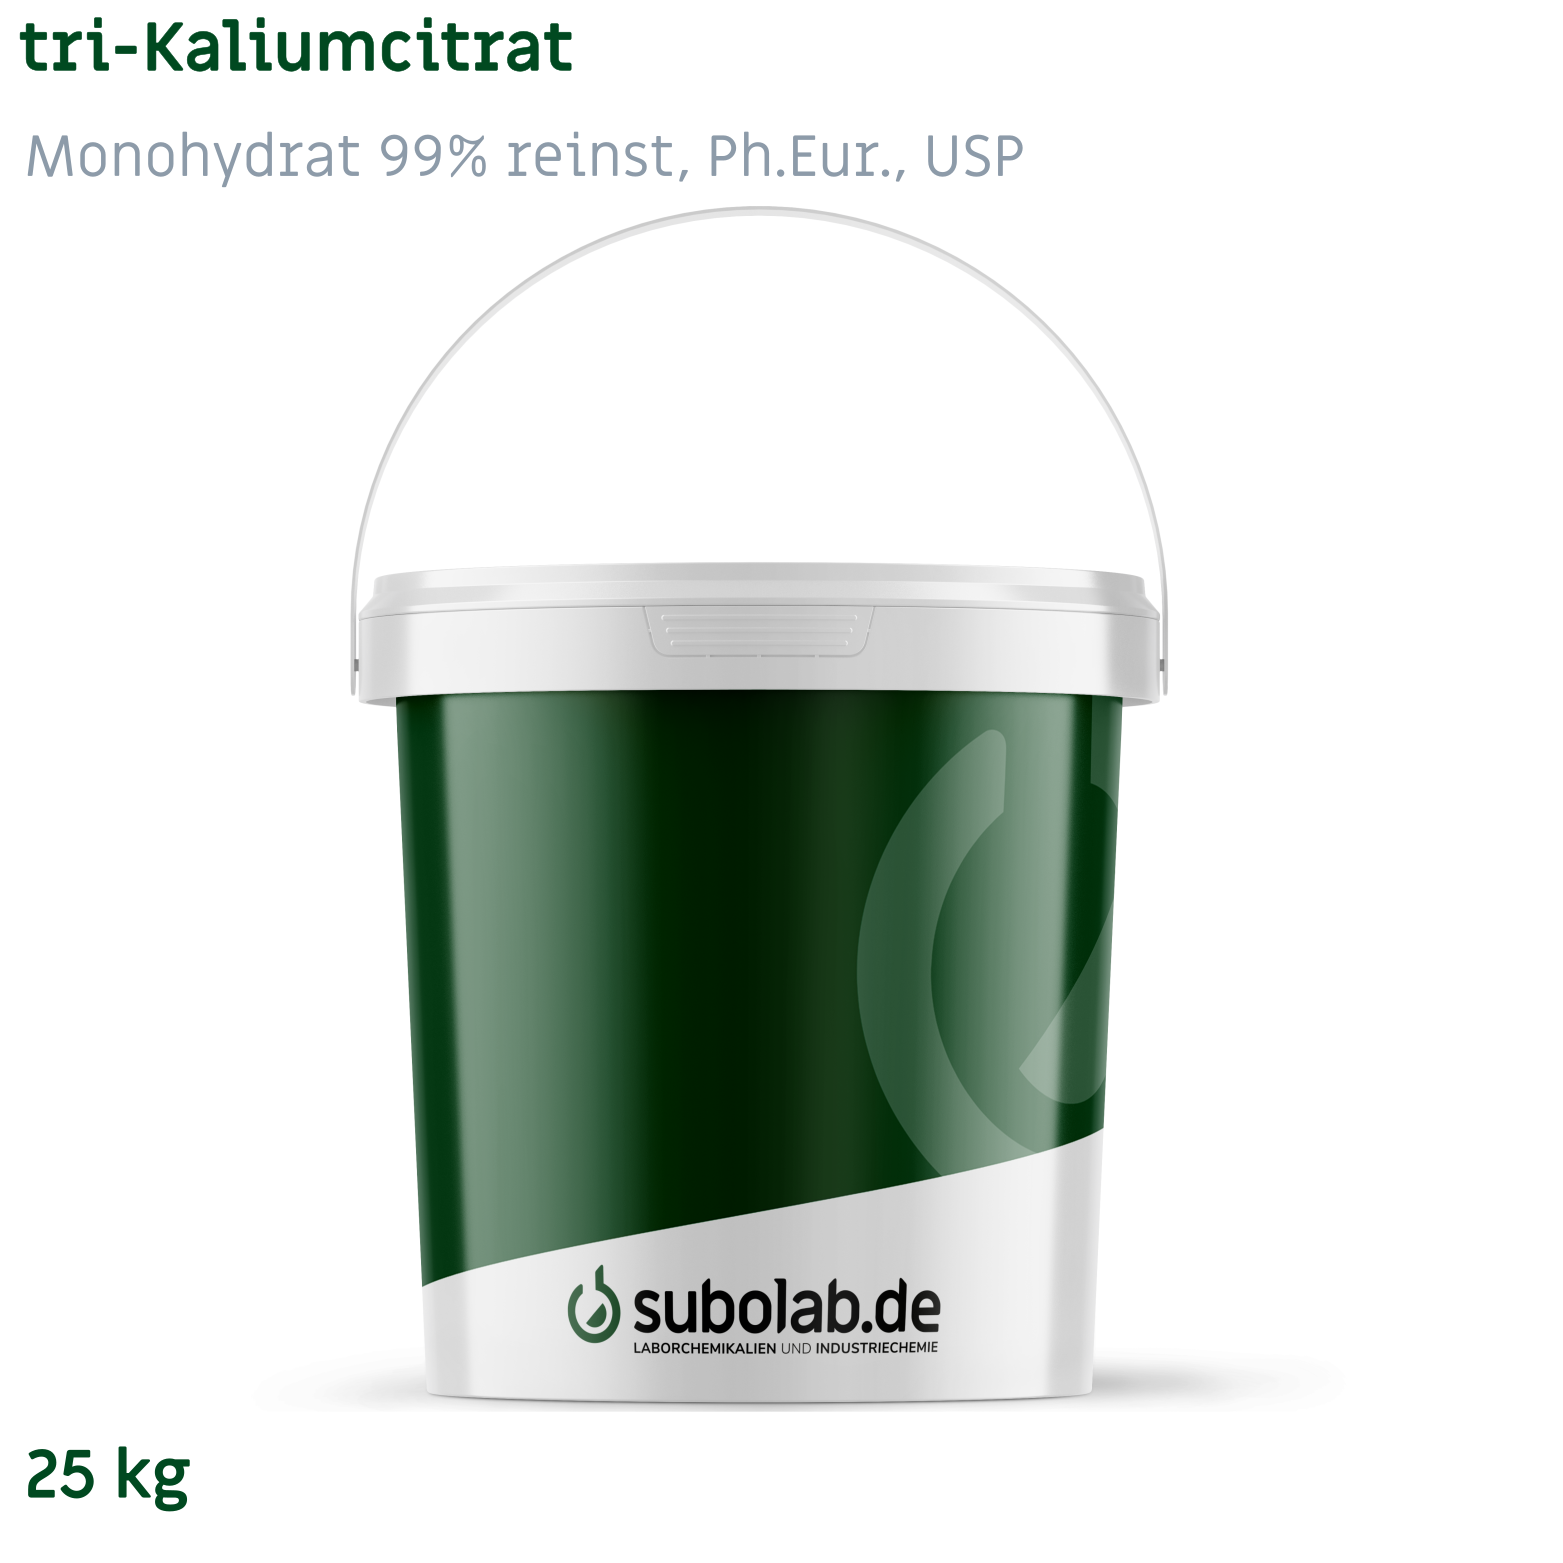 Bild von tri-Kaliumcitrat - Monohydrat 99% reinst, Ph.Eur., USP (25 kg)